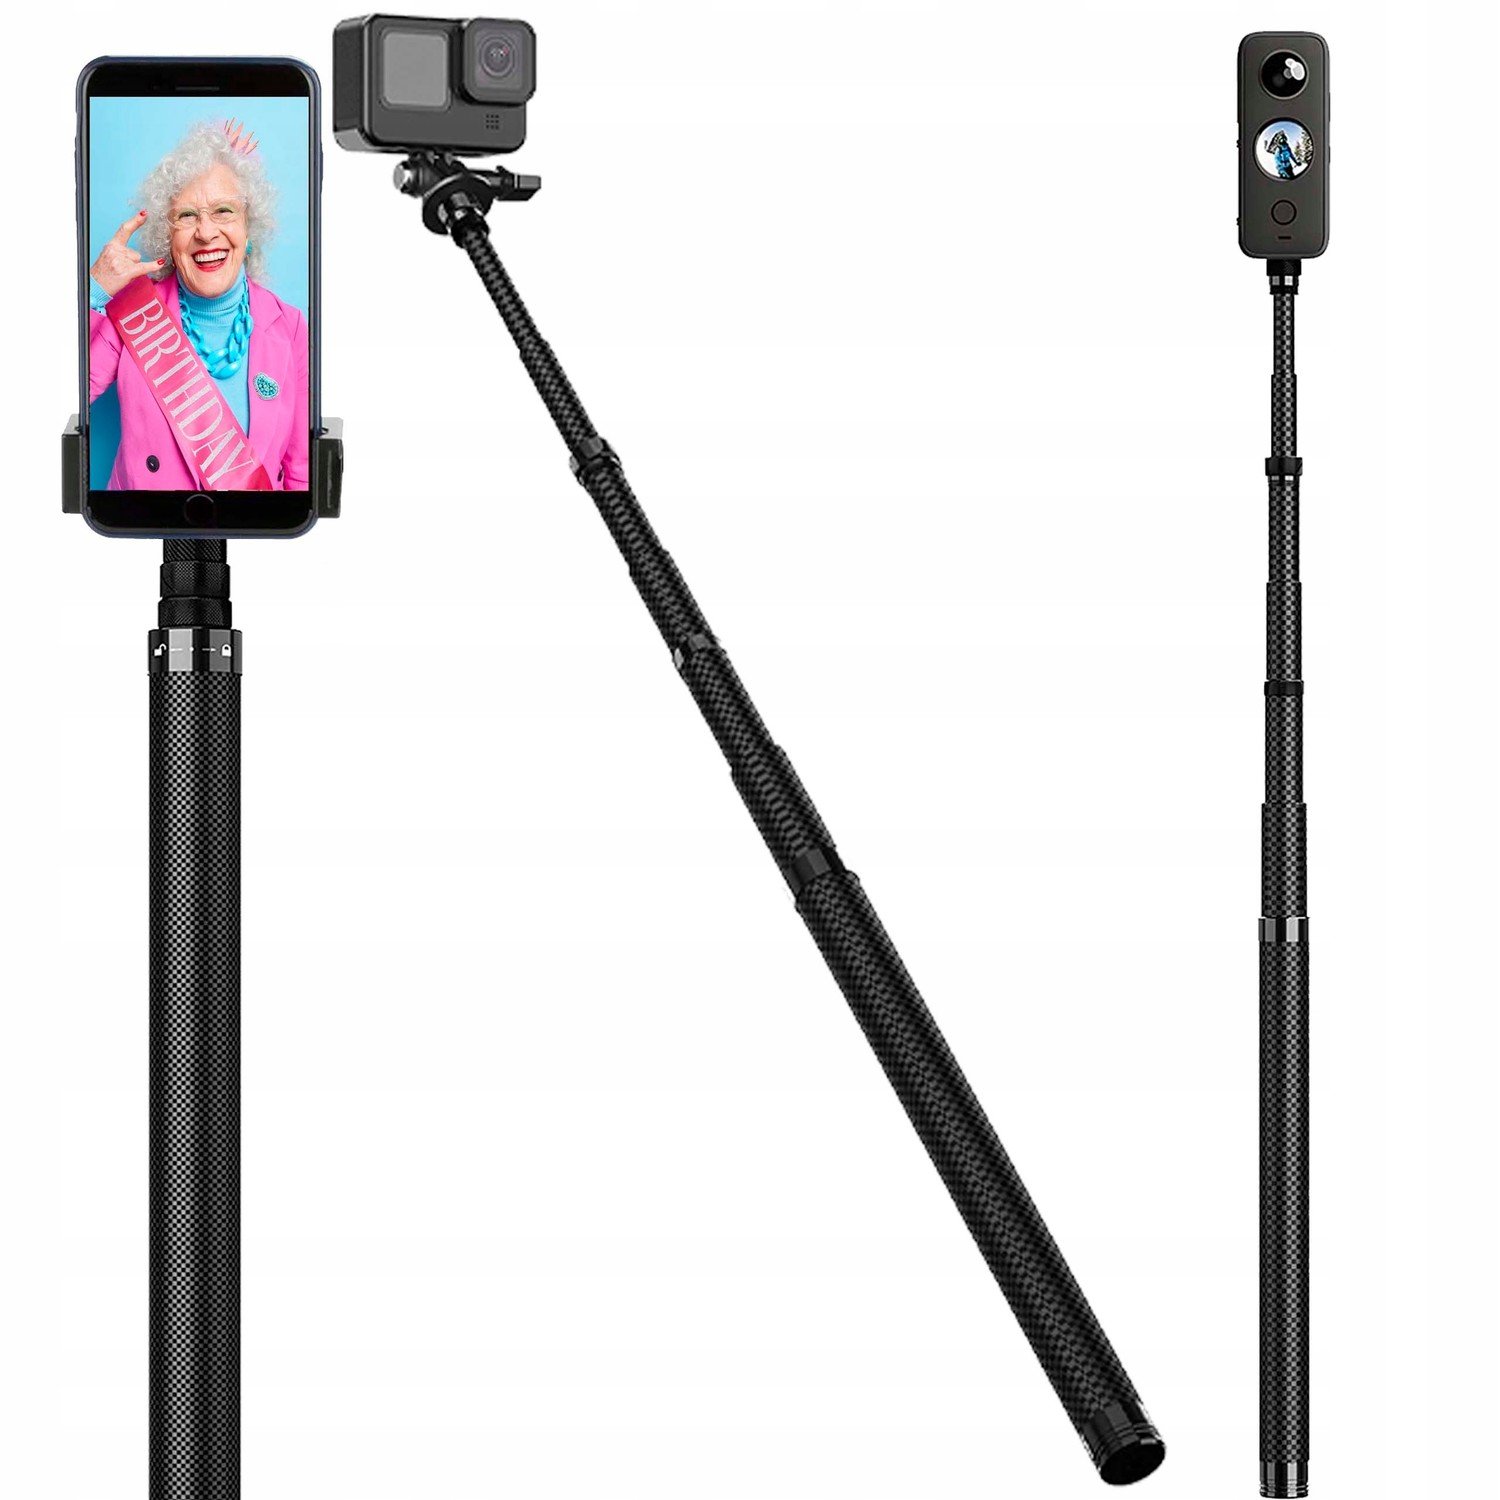 Selfie tyč 3 metry Karbonová pro telefon